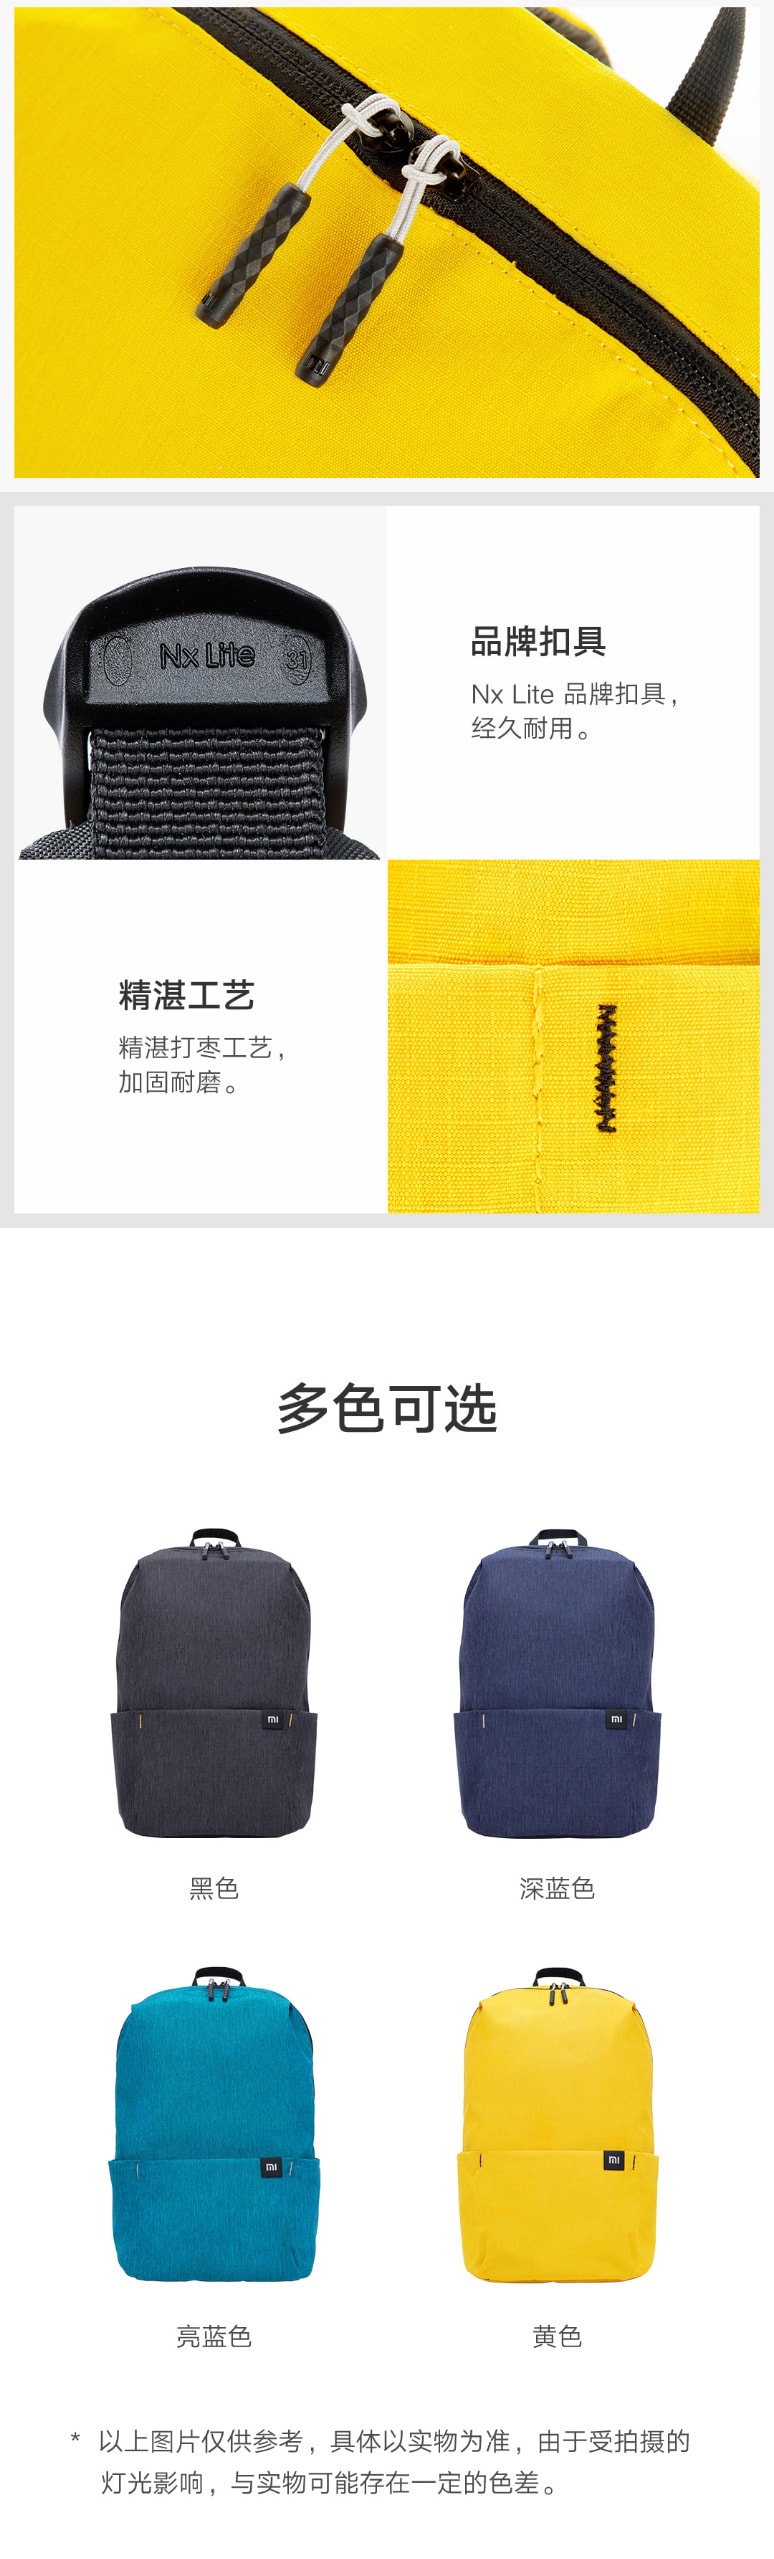 【中国直邮】小米有品 小米炫彩小背包 10L 深蓝